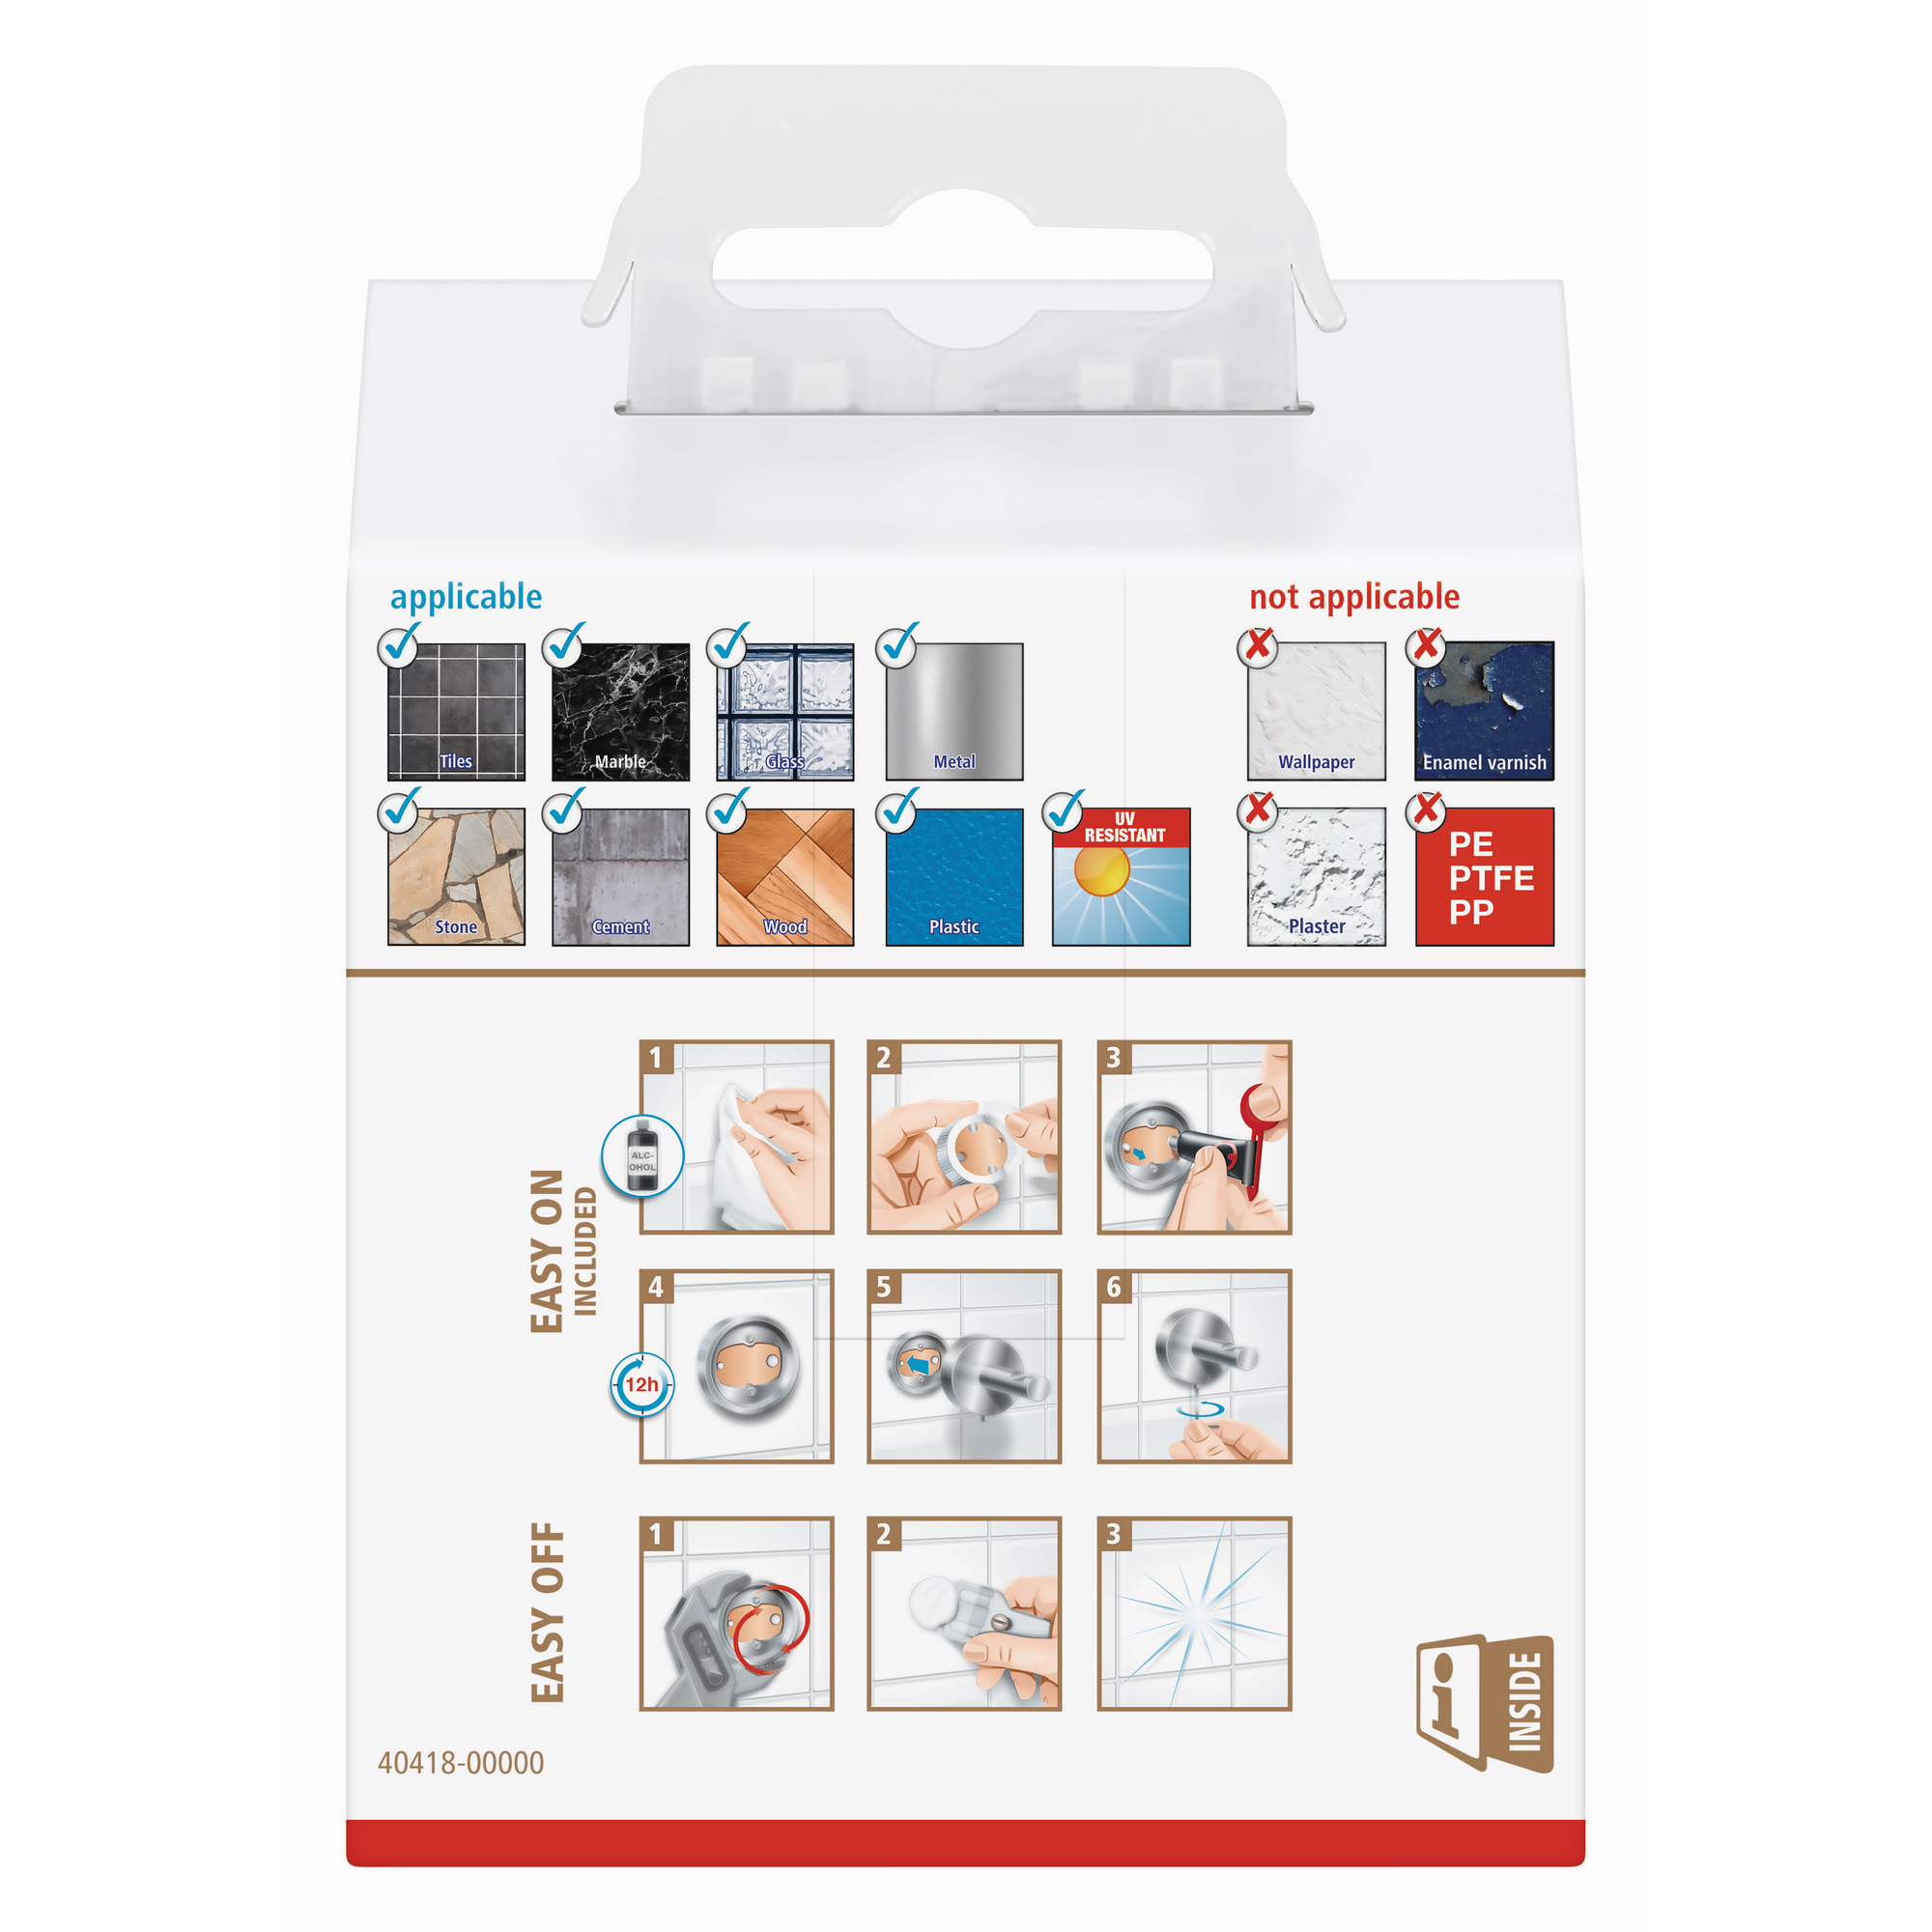 Handtuchhaken 'Exxclusiv' Edelstahloptik mit Klebelösung 5 x 5 x 3,9 cm + product picture